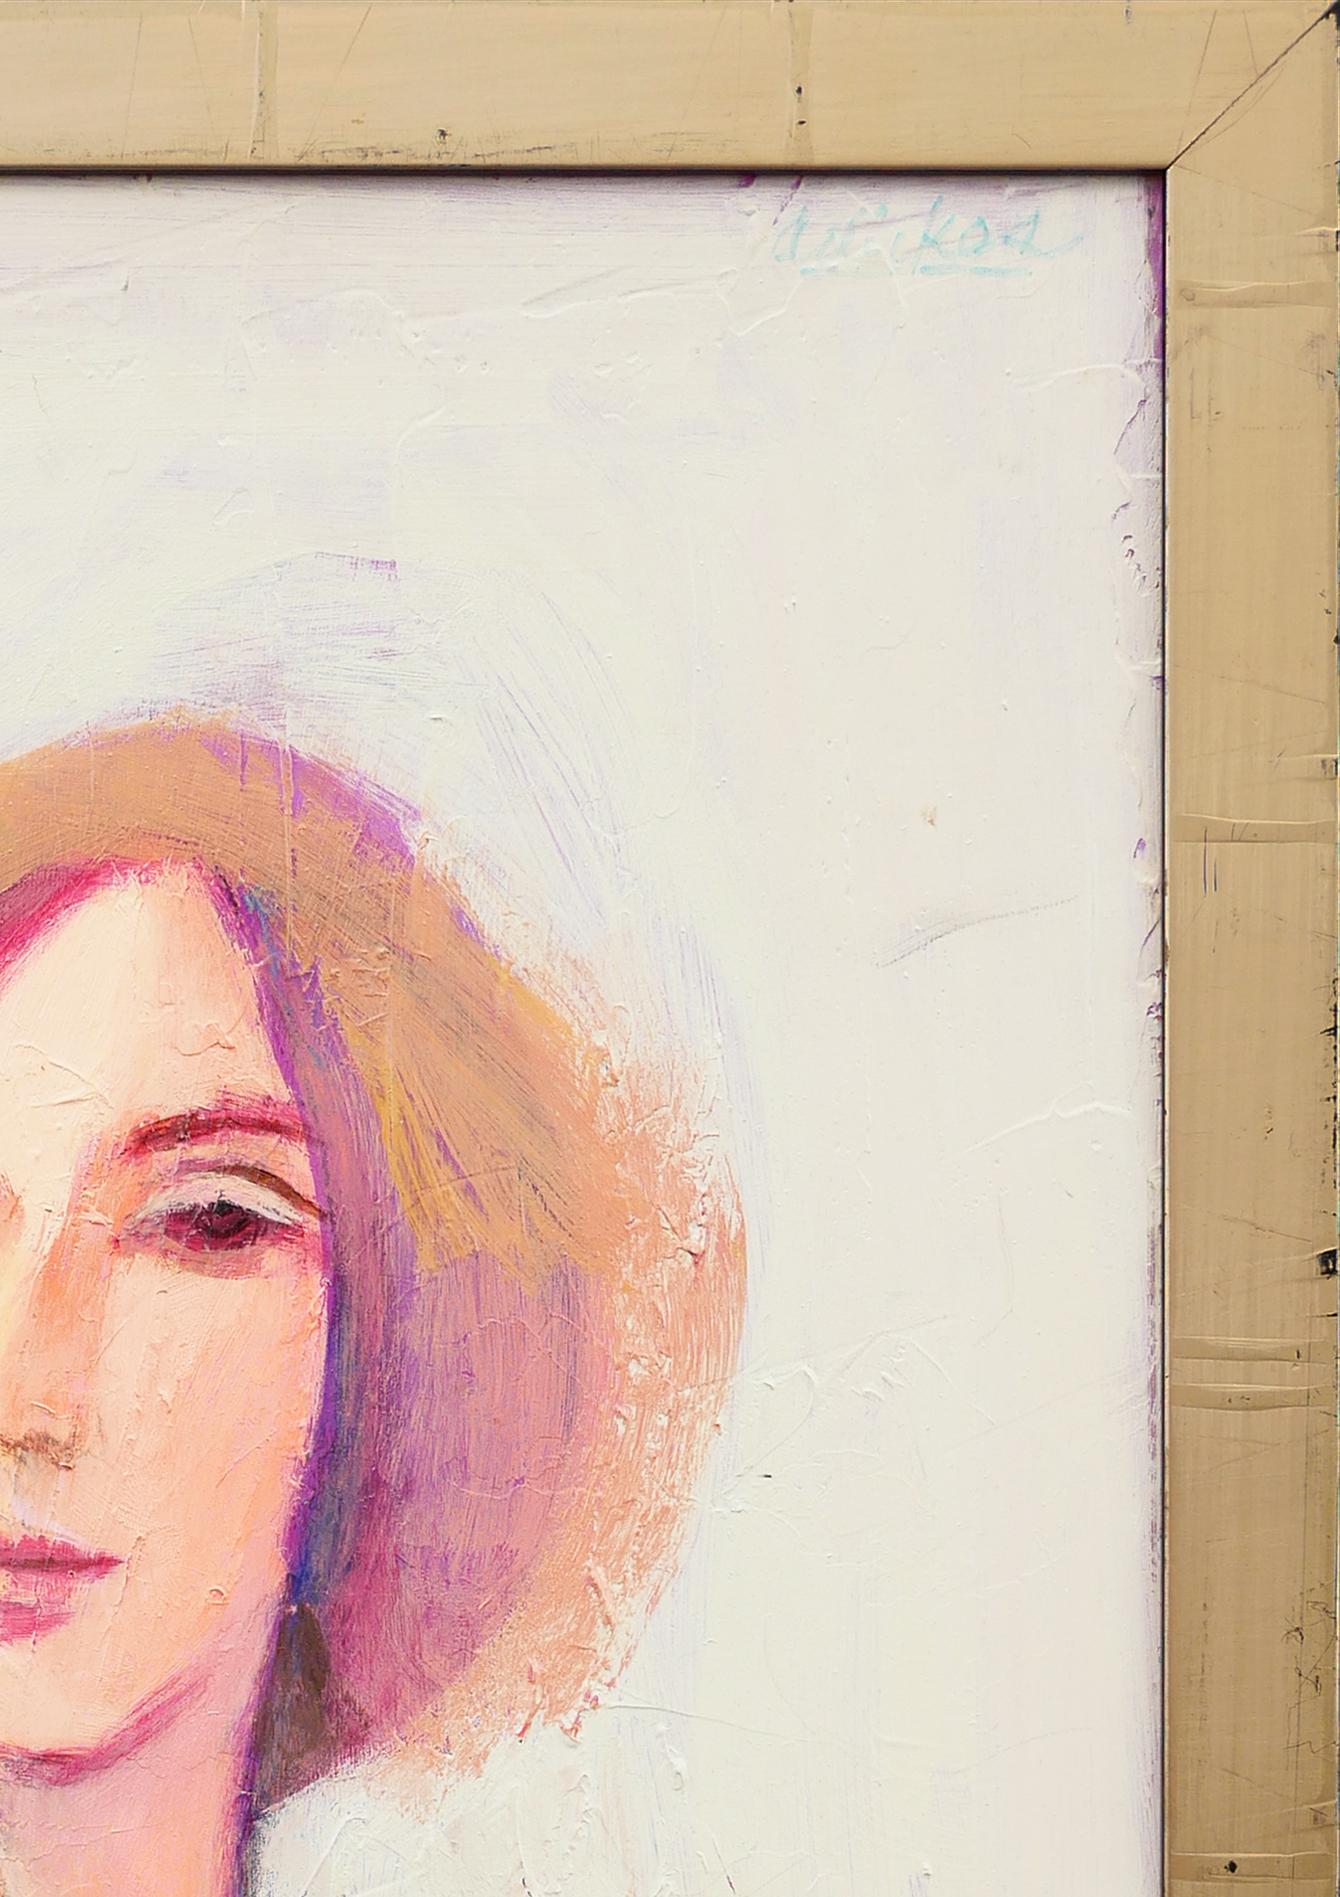 Portrait abstrait moderne aux tons orange et rouge de l'artiste David Adickes, de Houston, au Texas. Le tableau représente une femme à la peau claire, aux cheveux orange courts, portant un haut à manches rouges. Non signée. Encadré dans un cadre en